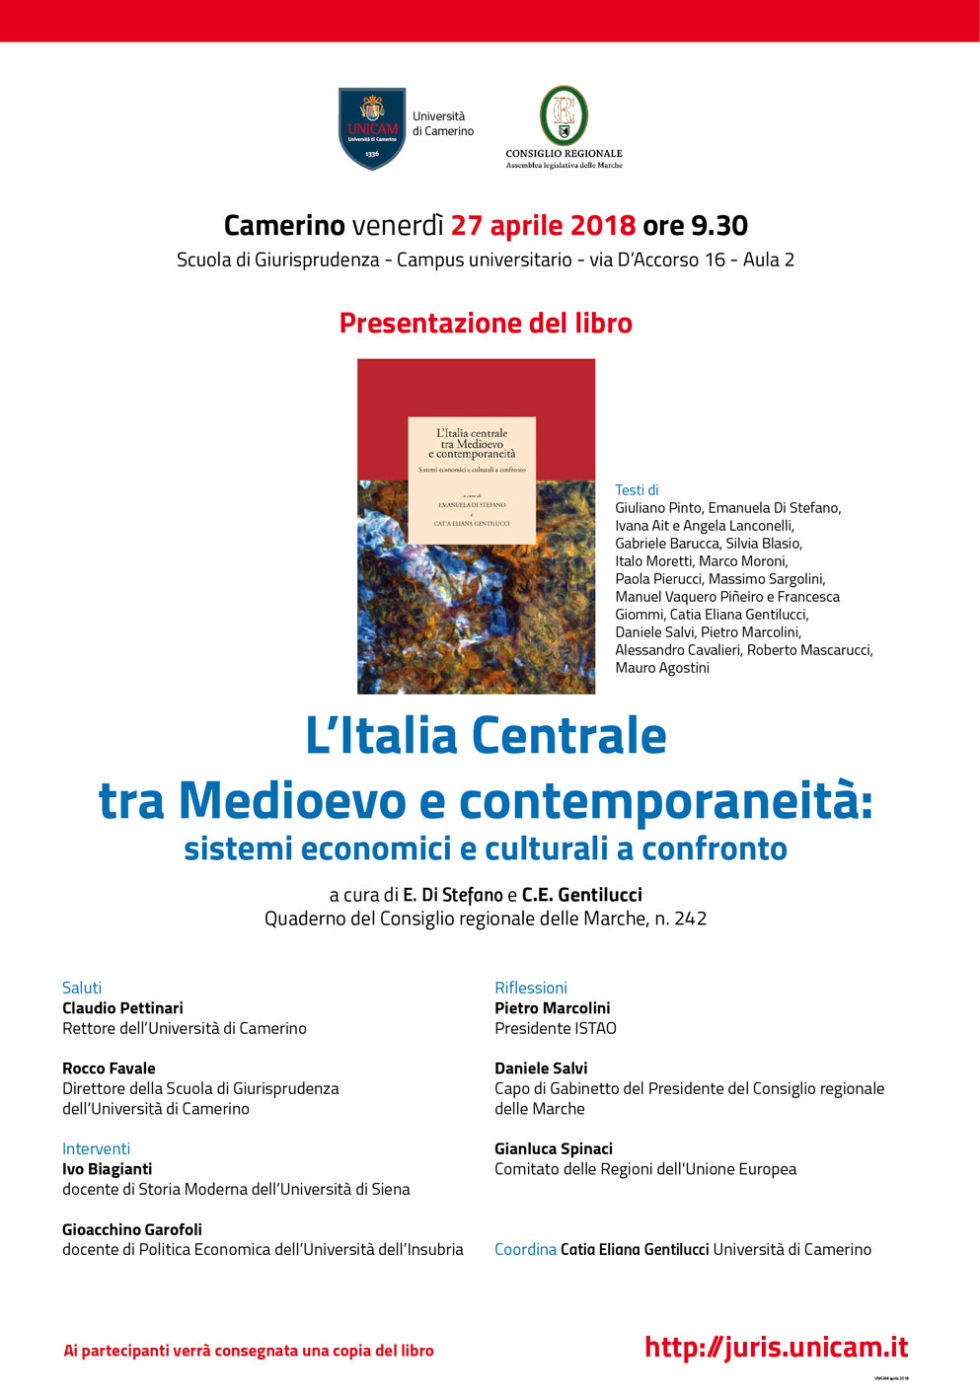 Presentazione del libro “L’Italia Centrale tra Medioevo e contemporaneità”